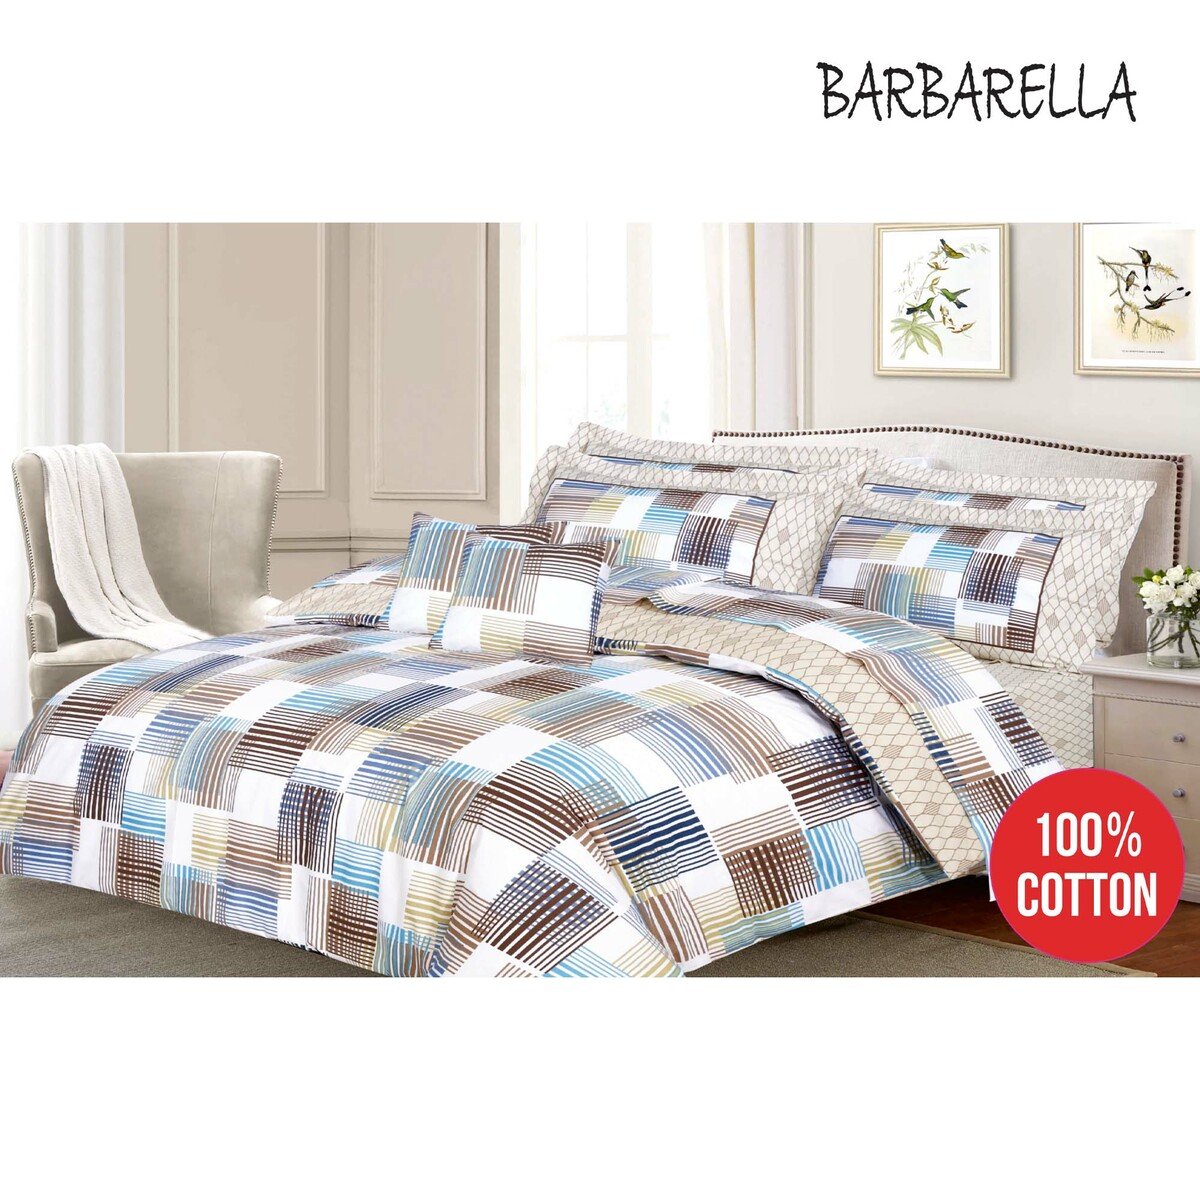 Barbarella Comforter King 241x259cm Beni 4pcs Set